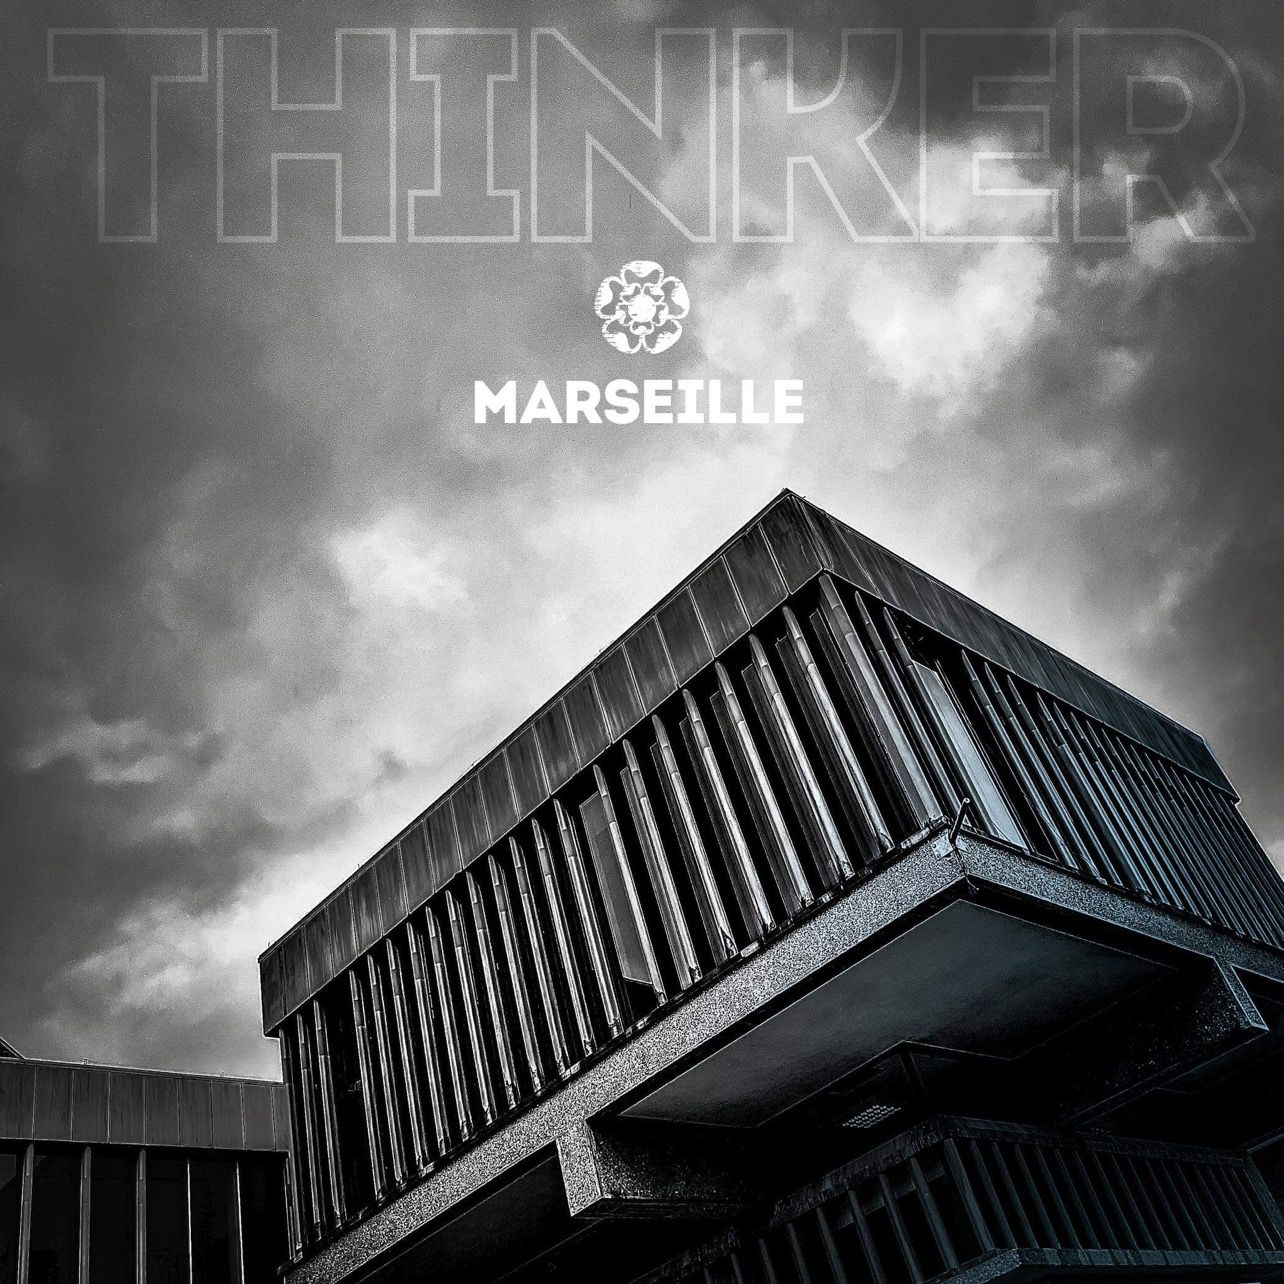 Marseille - 'Thinker'